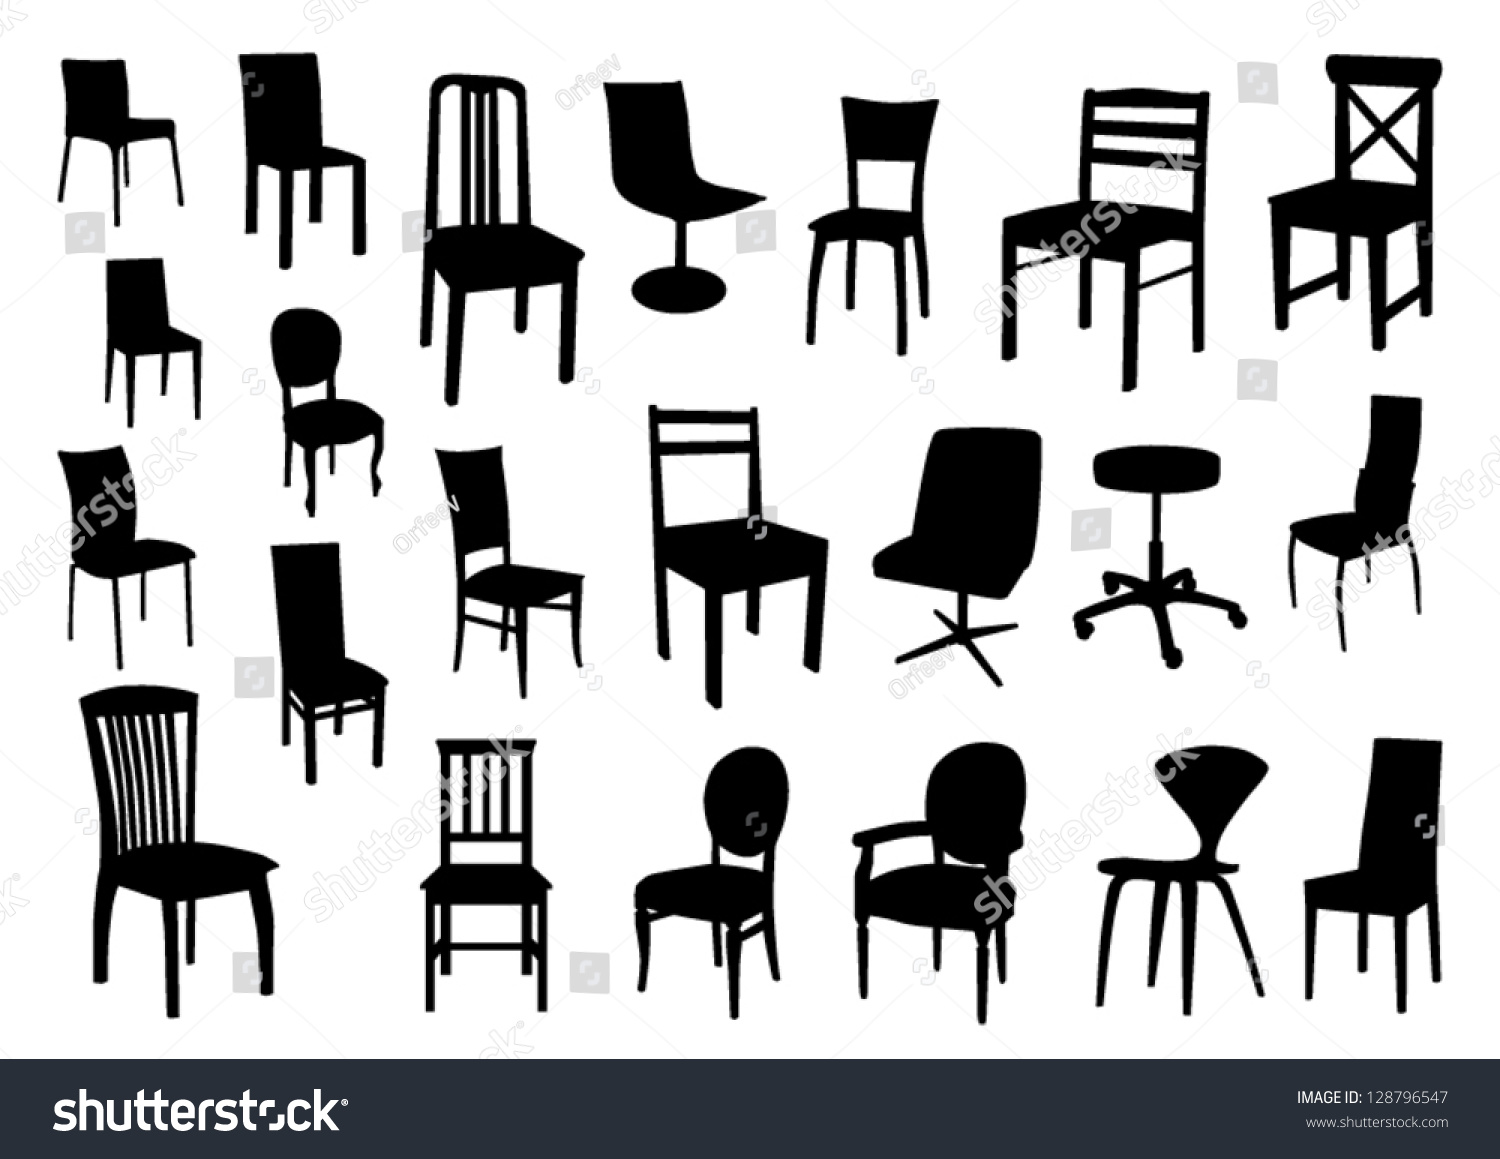 Vetor stock de Set Chair Silhouettes (livre de direitos) 128796547